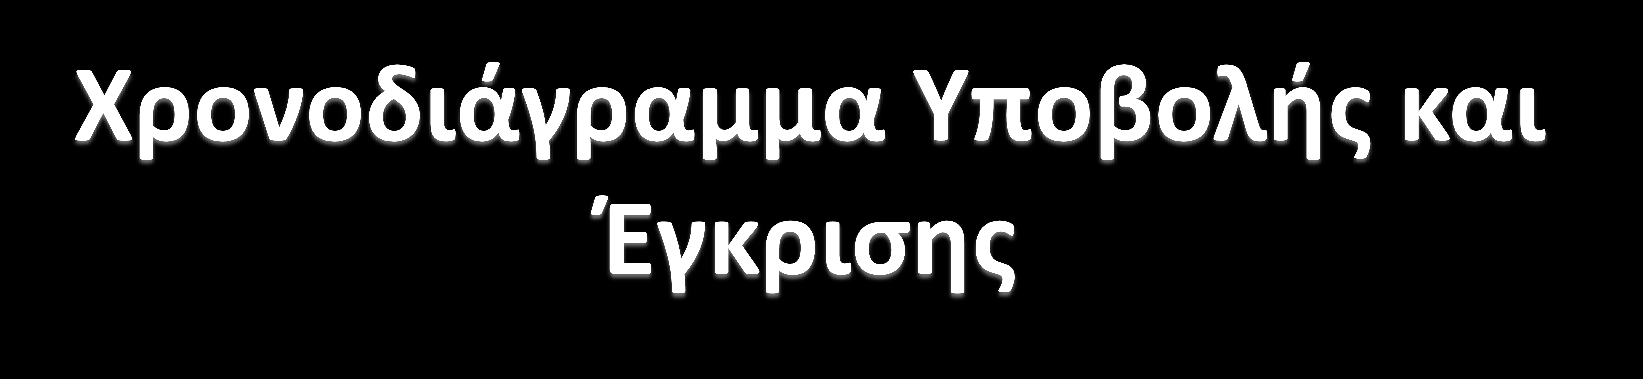 17/7/2014: Πρώτη υποβολή του σχεδίου του Π.Ε.Π. Δυτικής Ελλάδας 2014-2020 στην Ε.E.